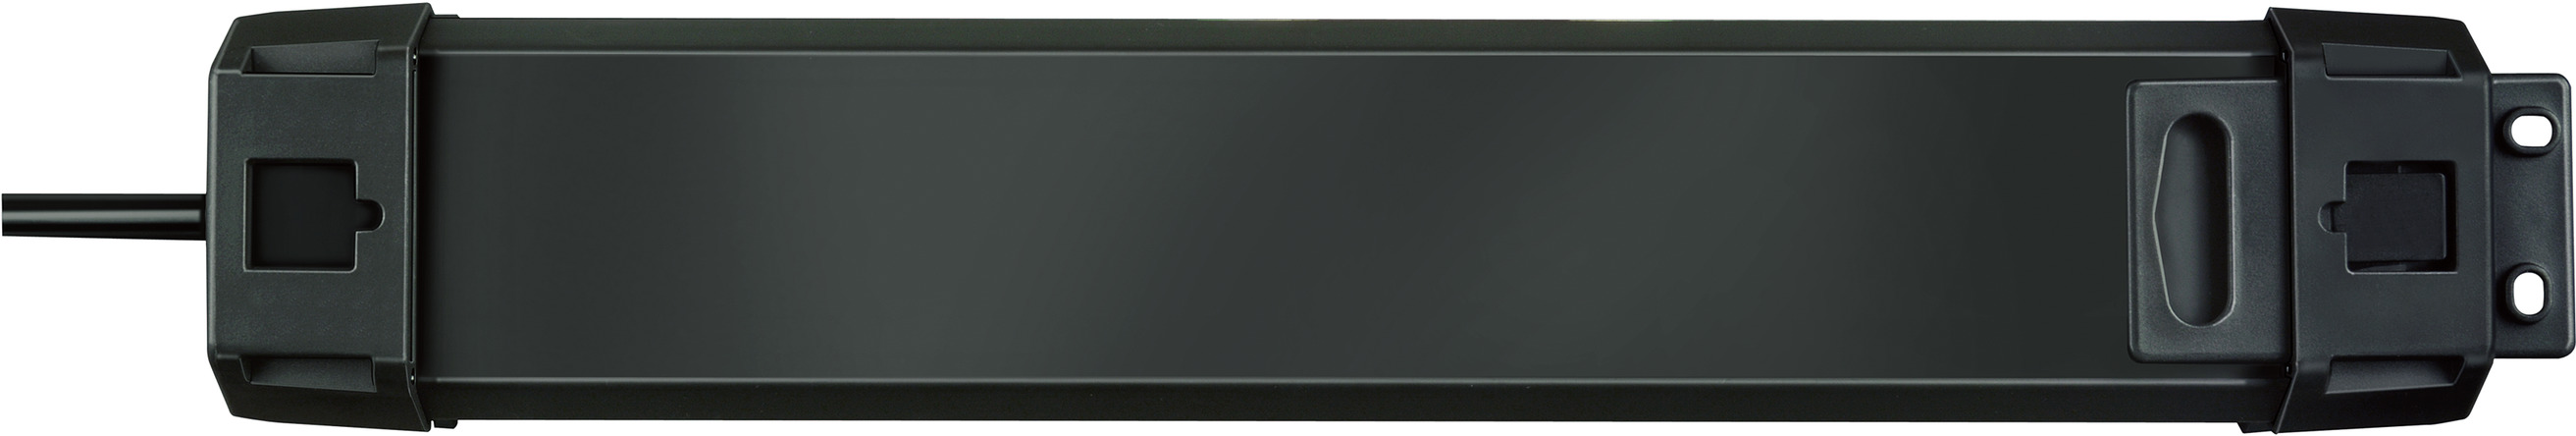 Prolongateur multiprise Premium-Line avec parasurtenseur 60.000A avec  chargeur USB 6 prises noir 3m H05VV-F 3G1,5 *BE*